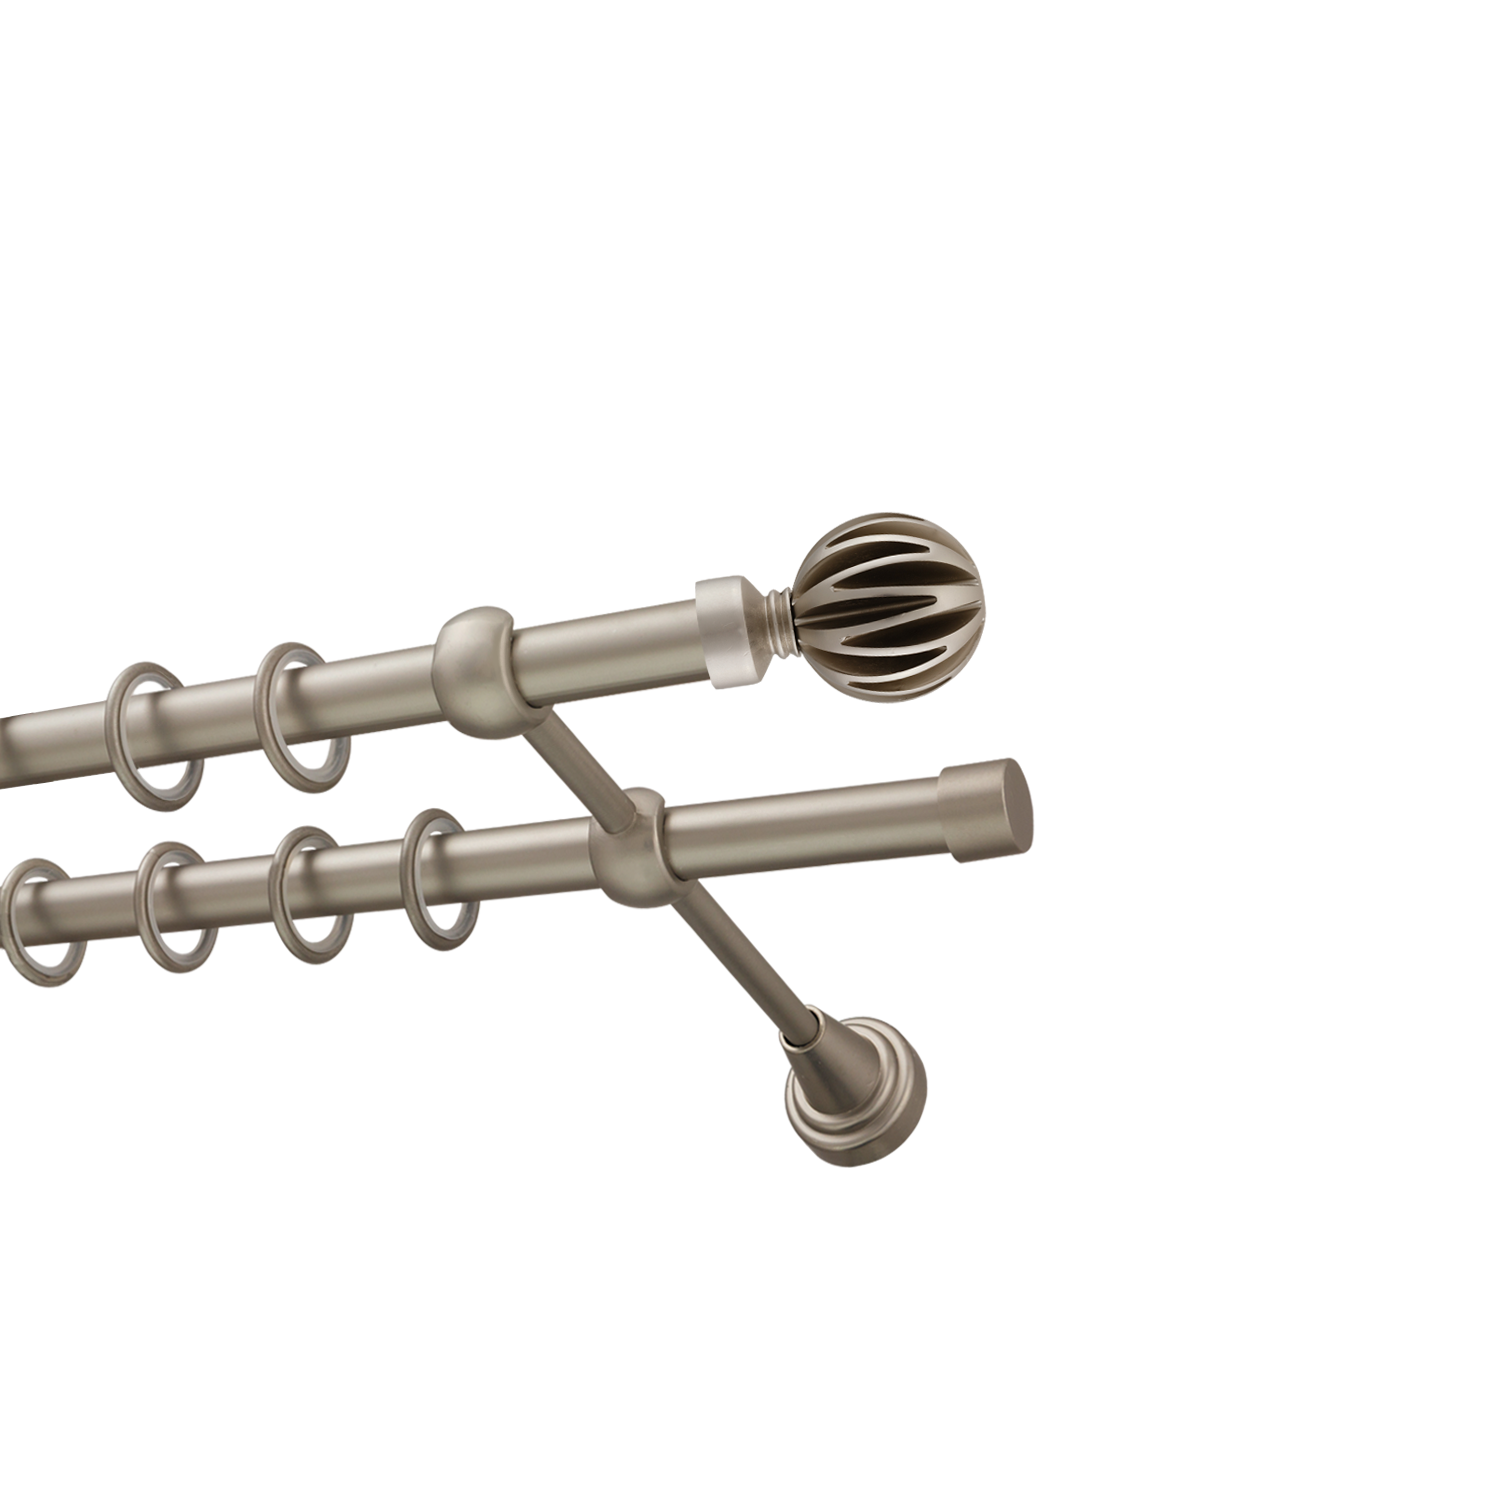 Металлический карниз для штор Шафран, двухрядный 16/16 мм, сталь, гладкая штанга, длина 200 см - фото Wikidecor.ru